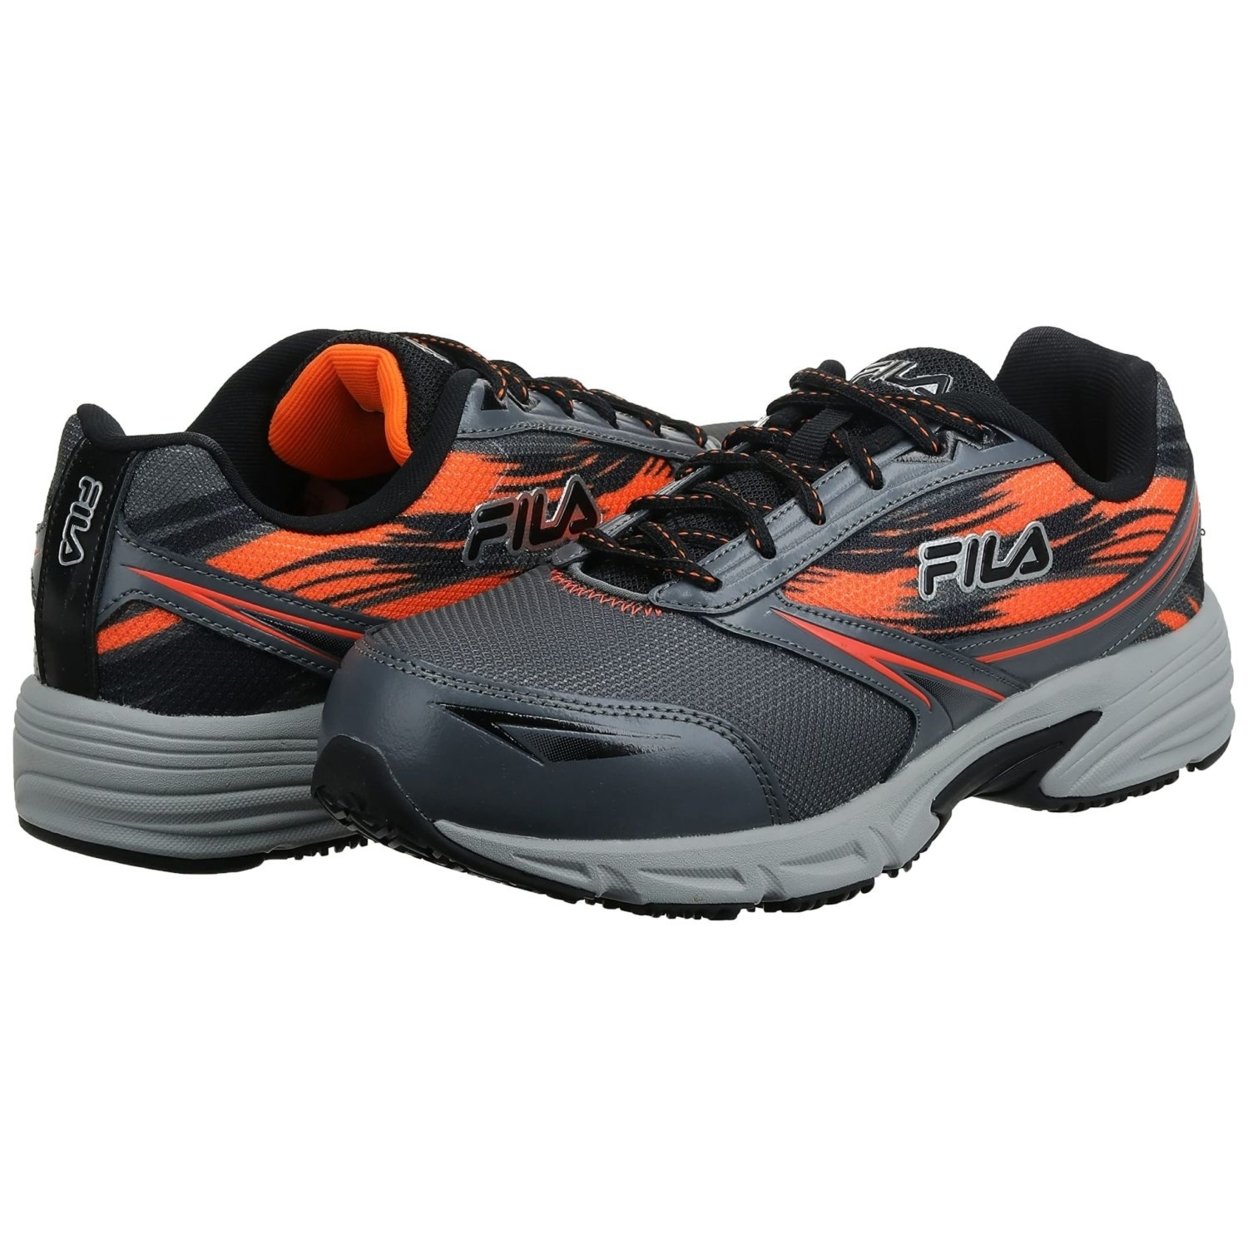 Fila Menâs Memory Meiera 2 Slip Resistant And Composite Toe Work Shoe CSRK/BLK/VORN - Castlerock/Black/Vibrant Orange, 12